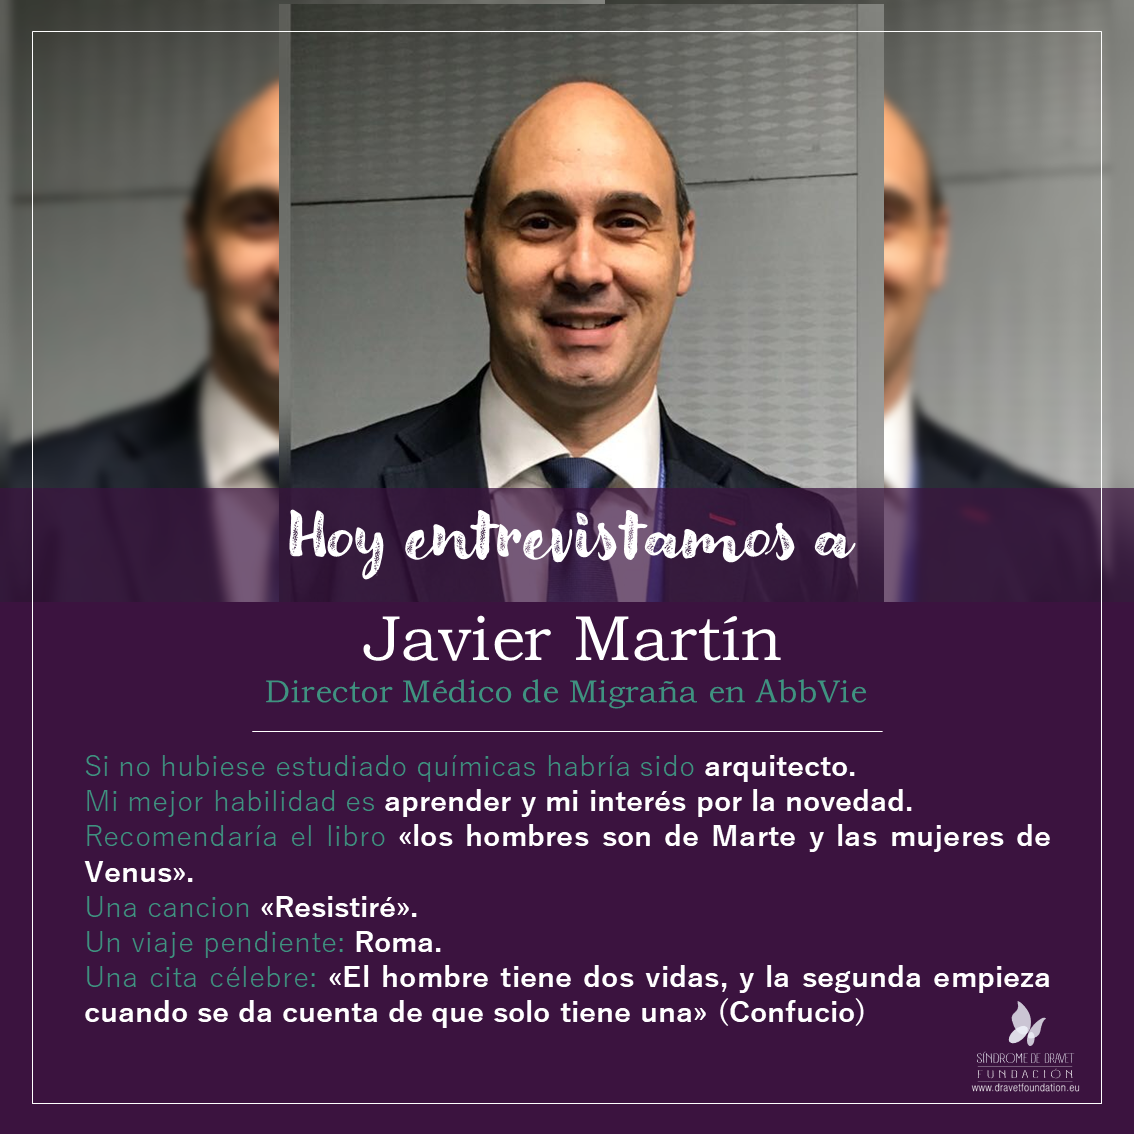 Hoy entrevistamos a Javier Martín